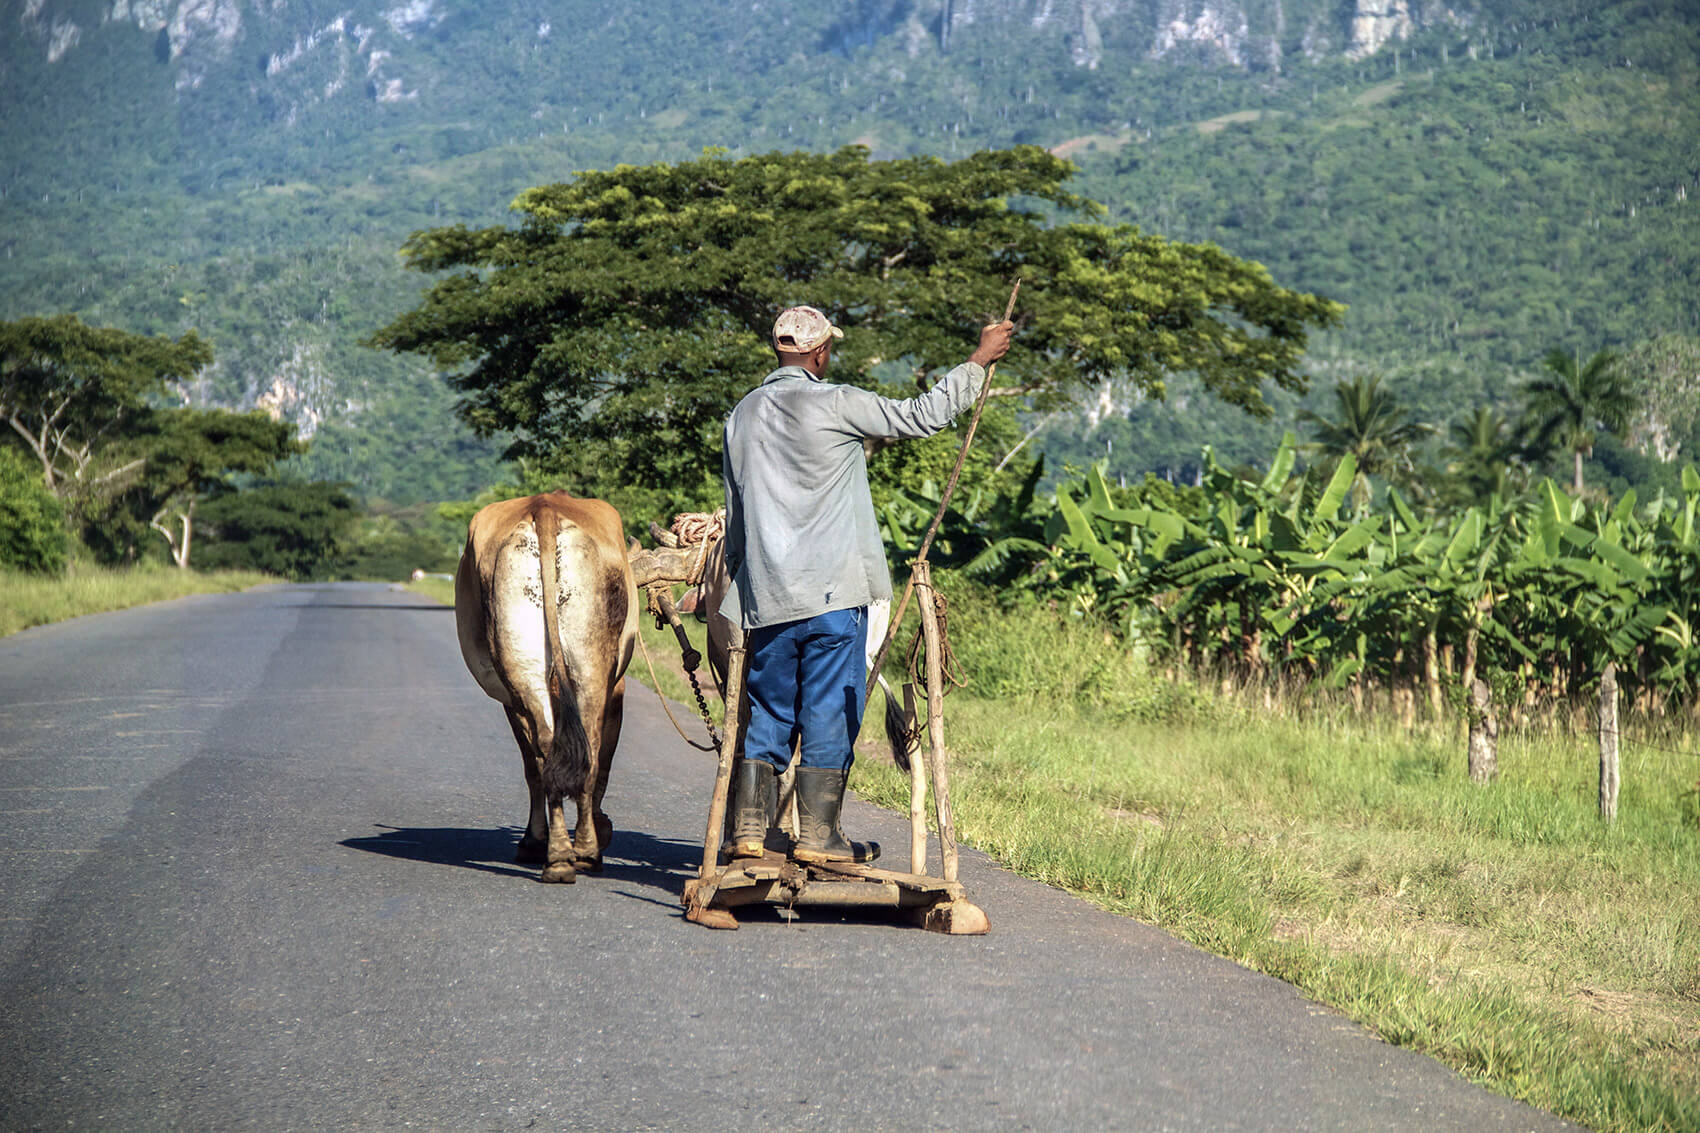 Farmer riding on an ox driven jalopy